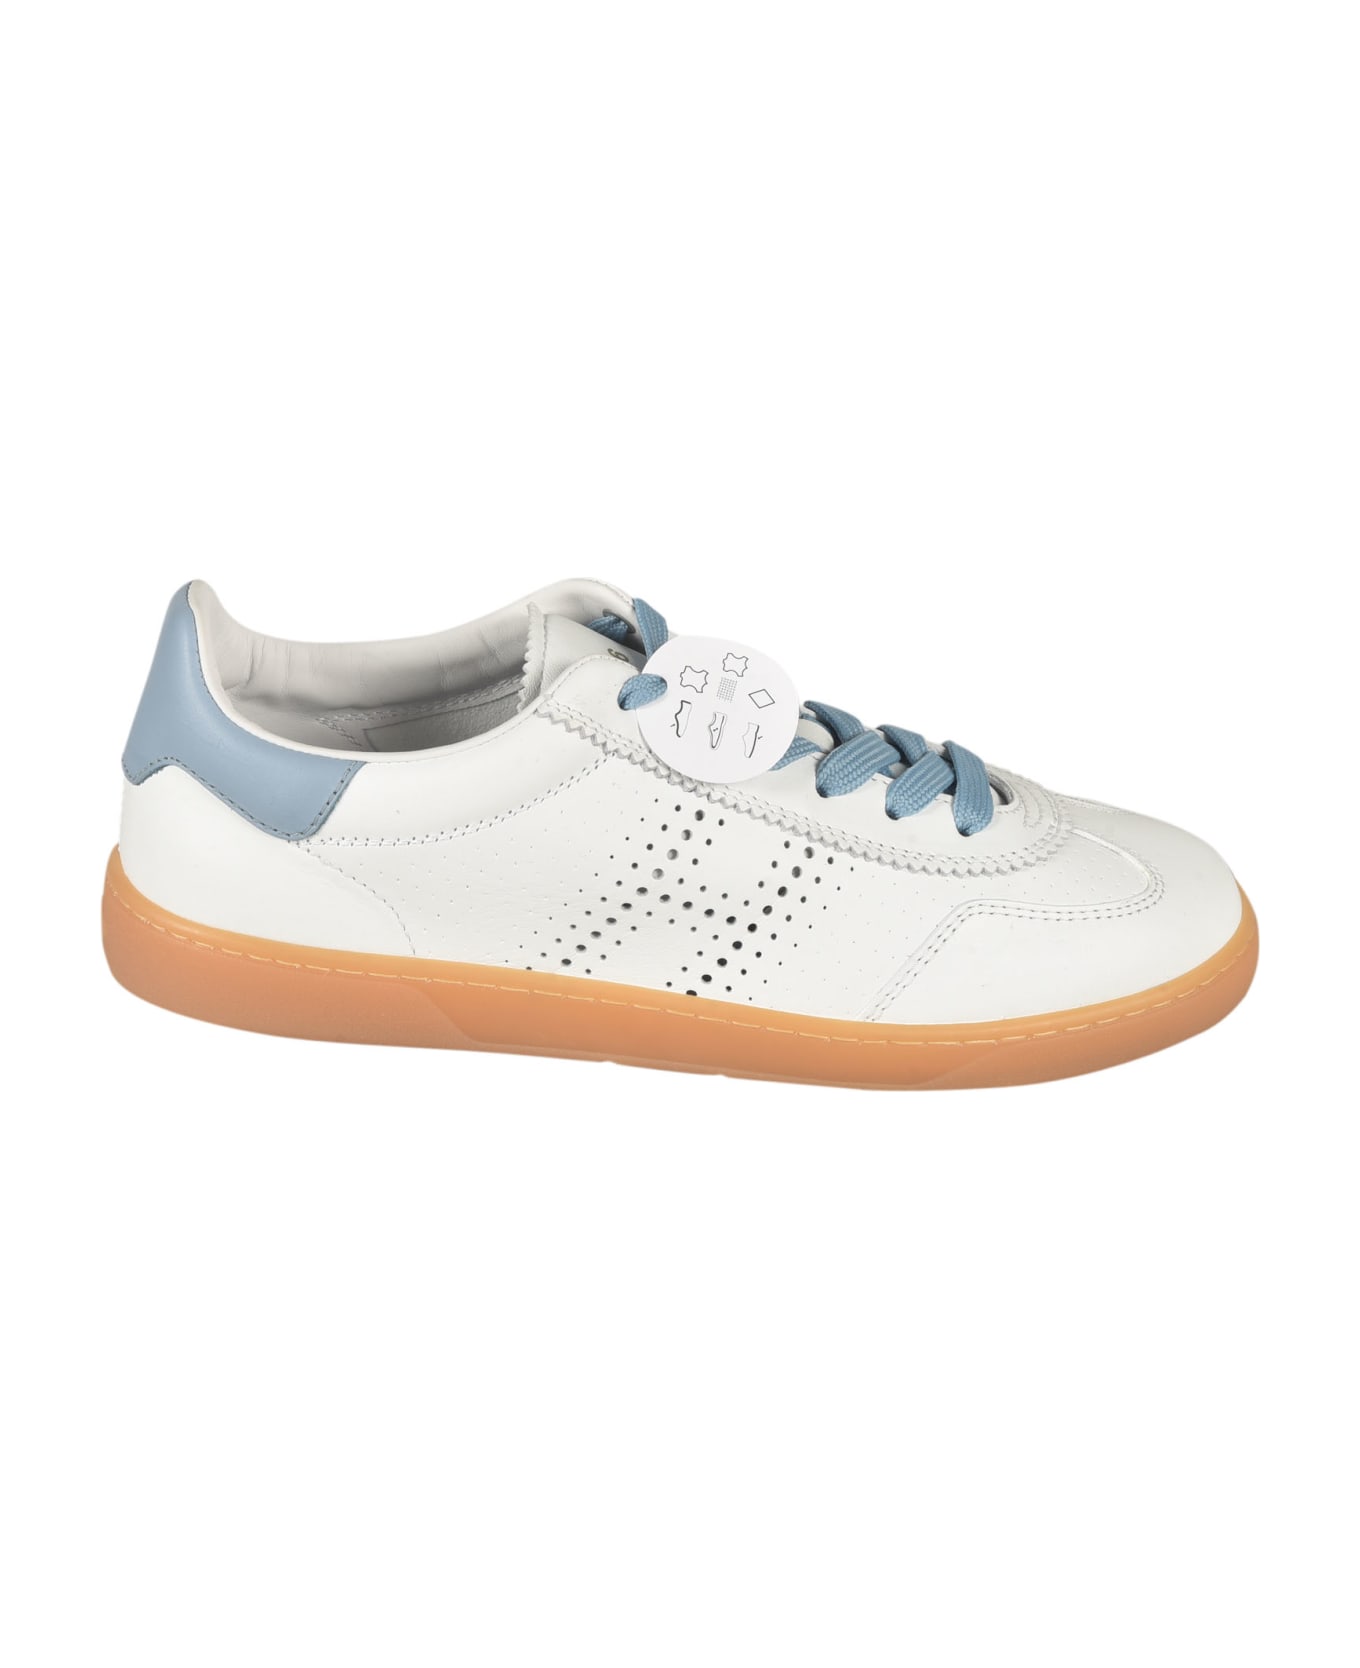 Hogan Perforated Low Sneakers - Sum Bianco + Azzurro